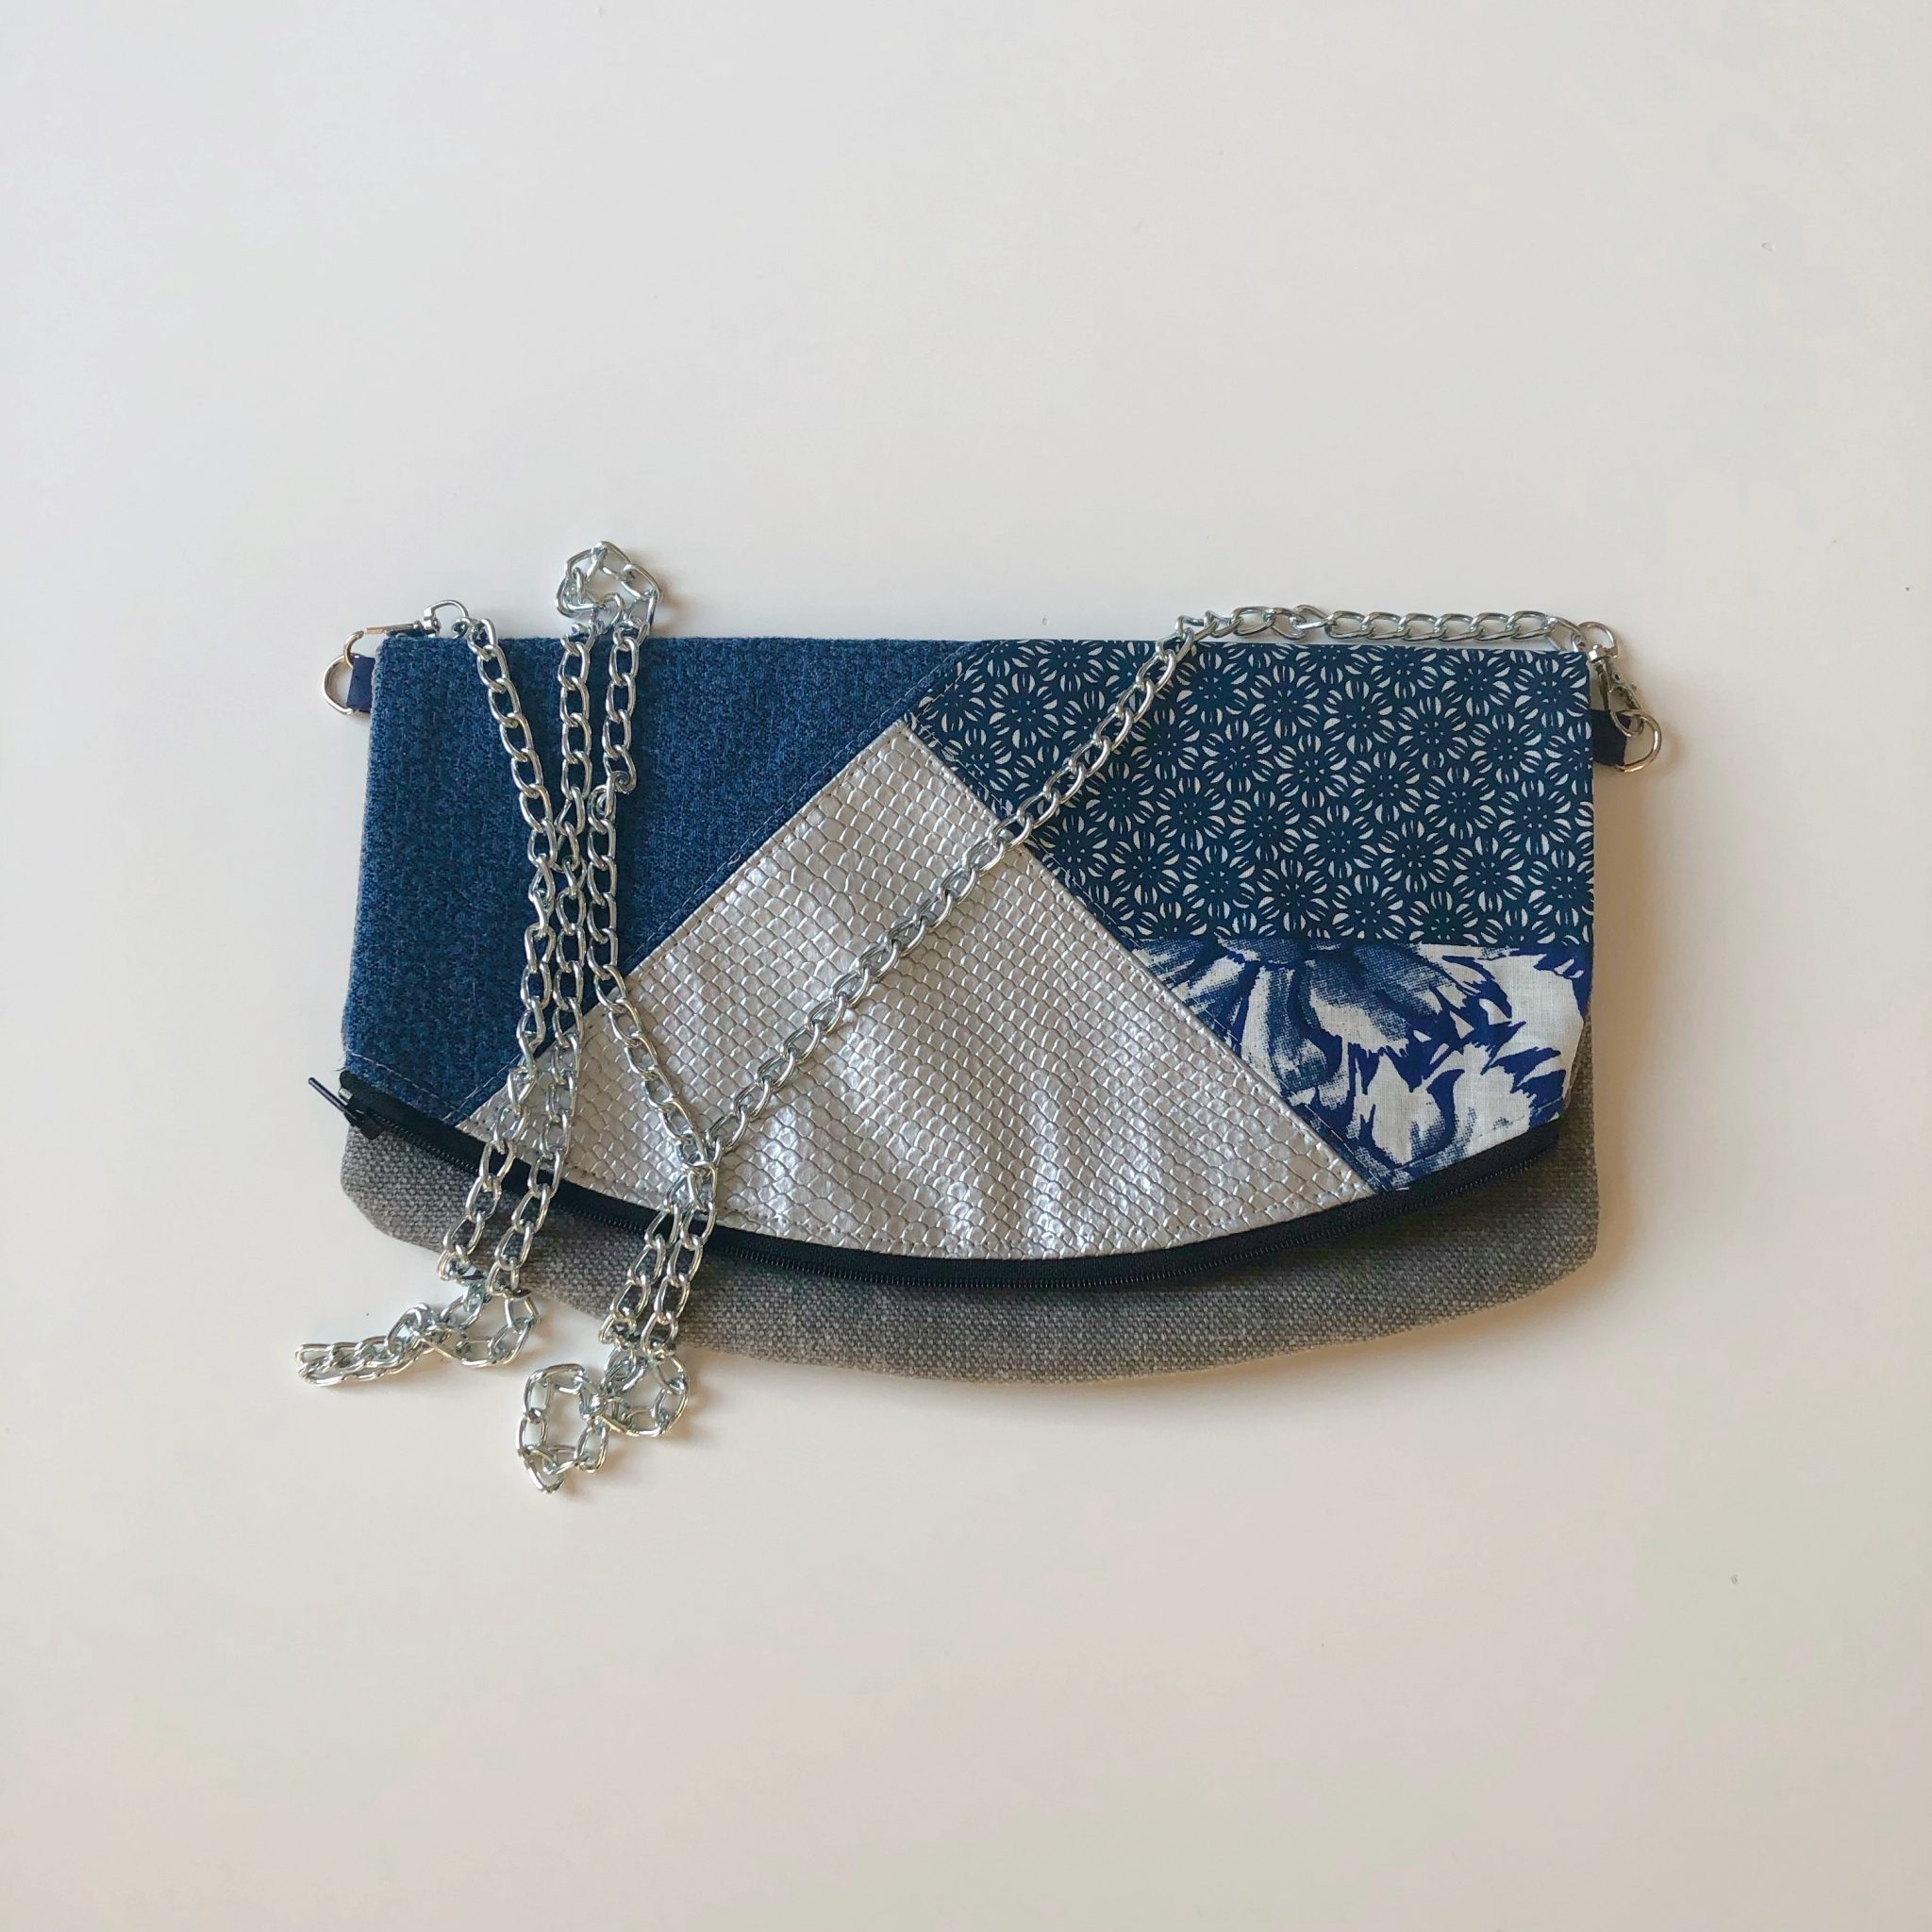 Sac bandoulière de la marque Bleu Souris - bleu et argent -sac bandoulière